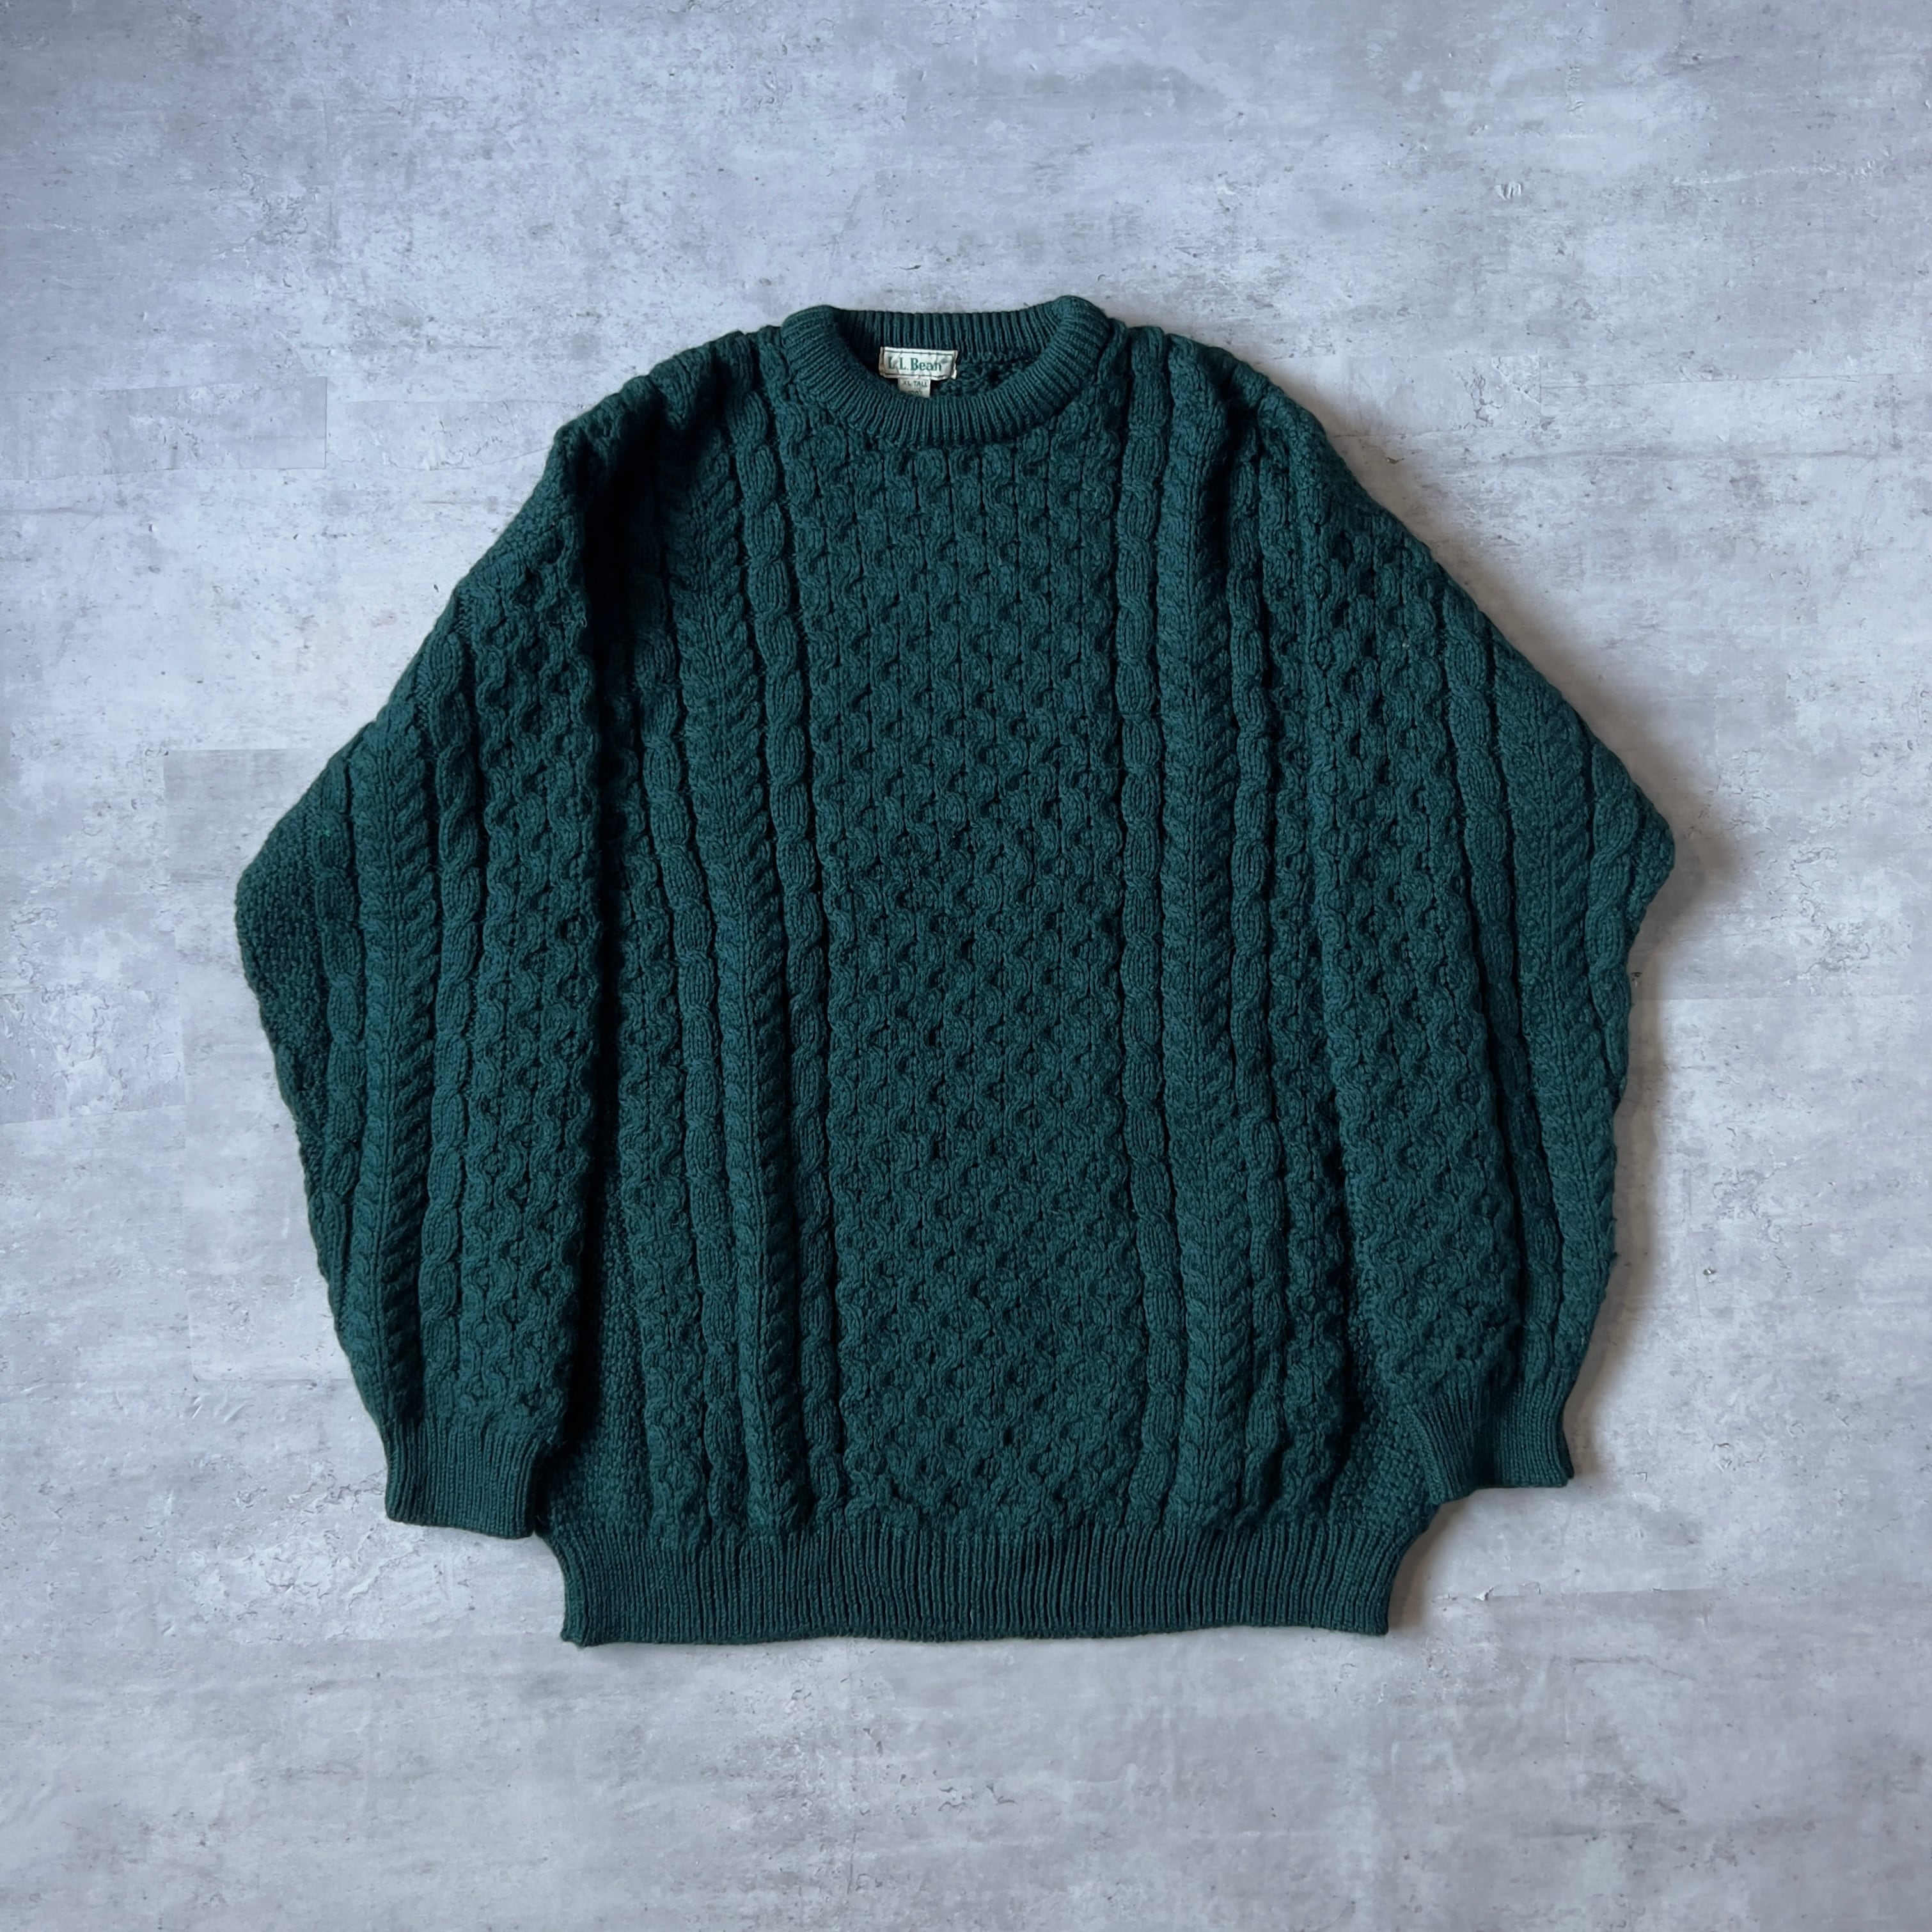 80s-90s “L.L. Bean” dark green Ireland Fisherman knit 80年代 90